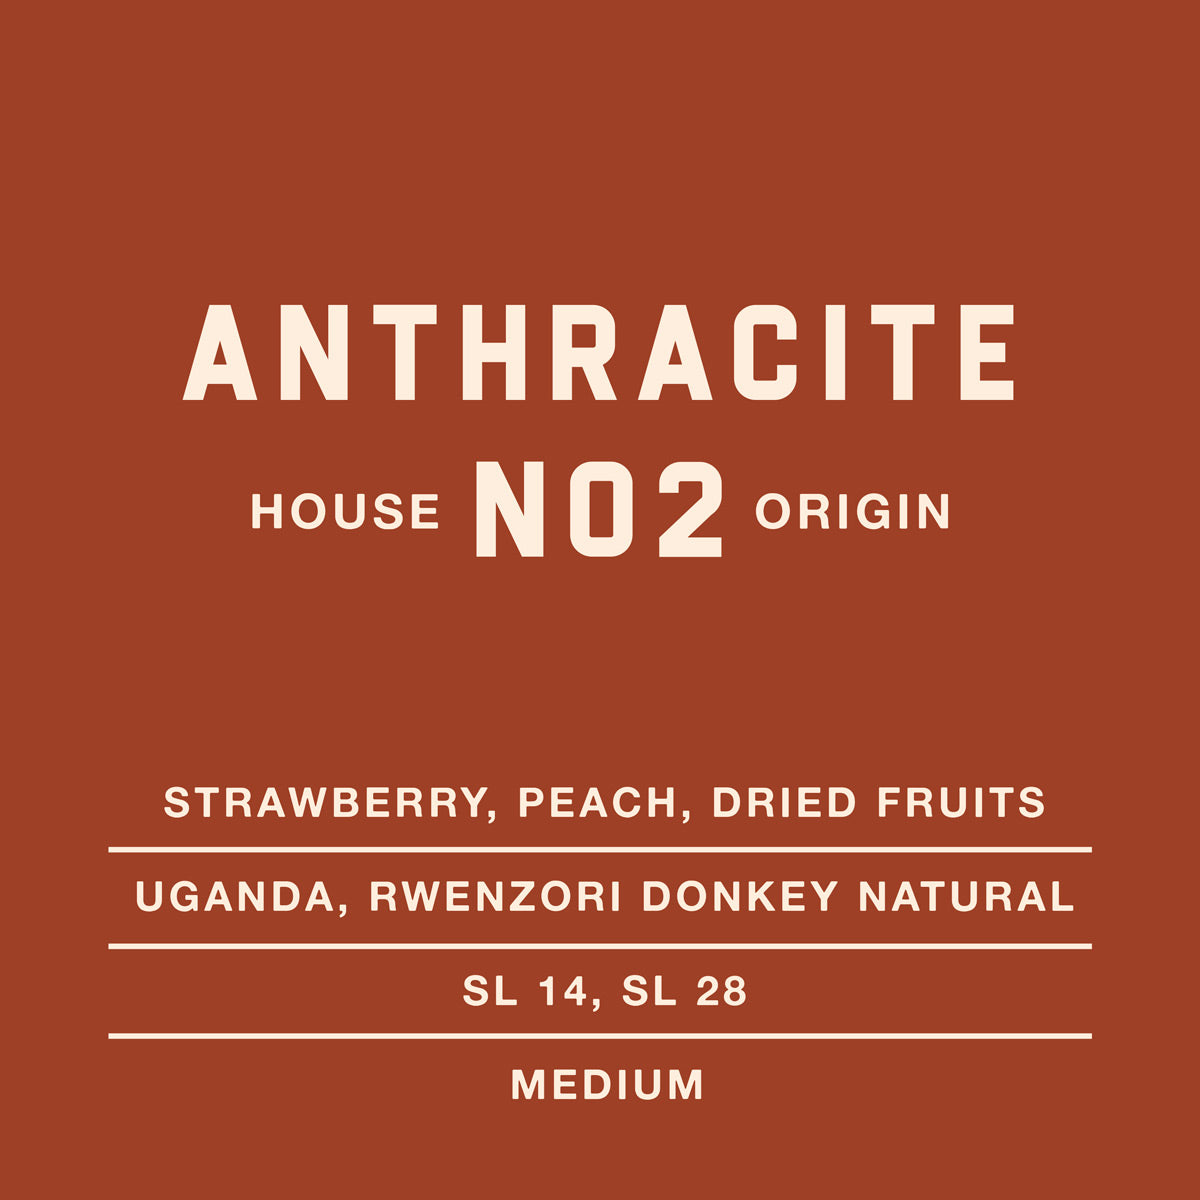 Anthracite-no2-House-Origin-Coffee